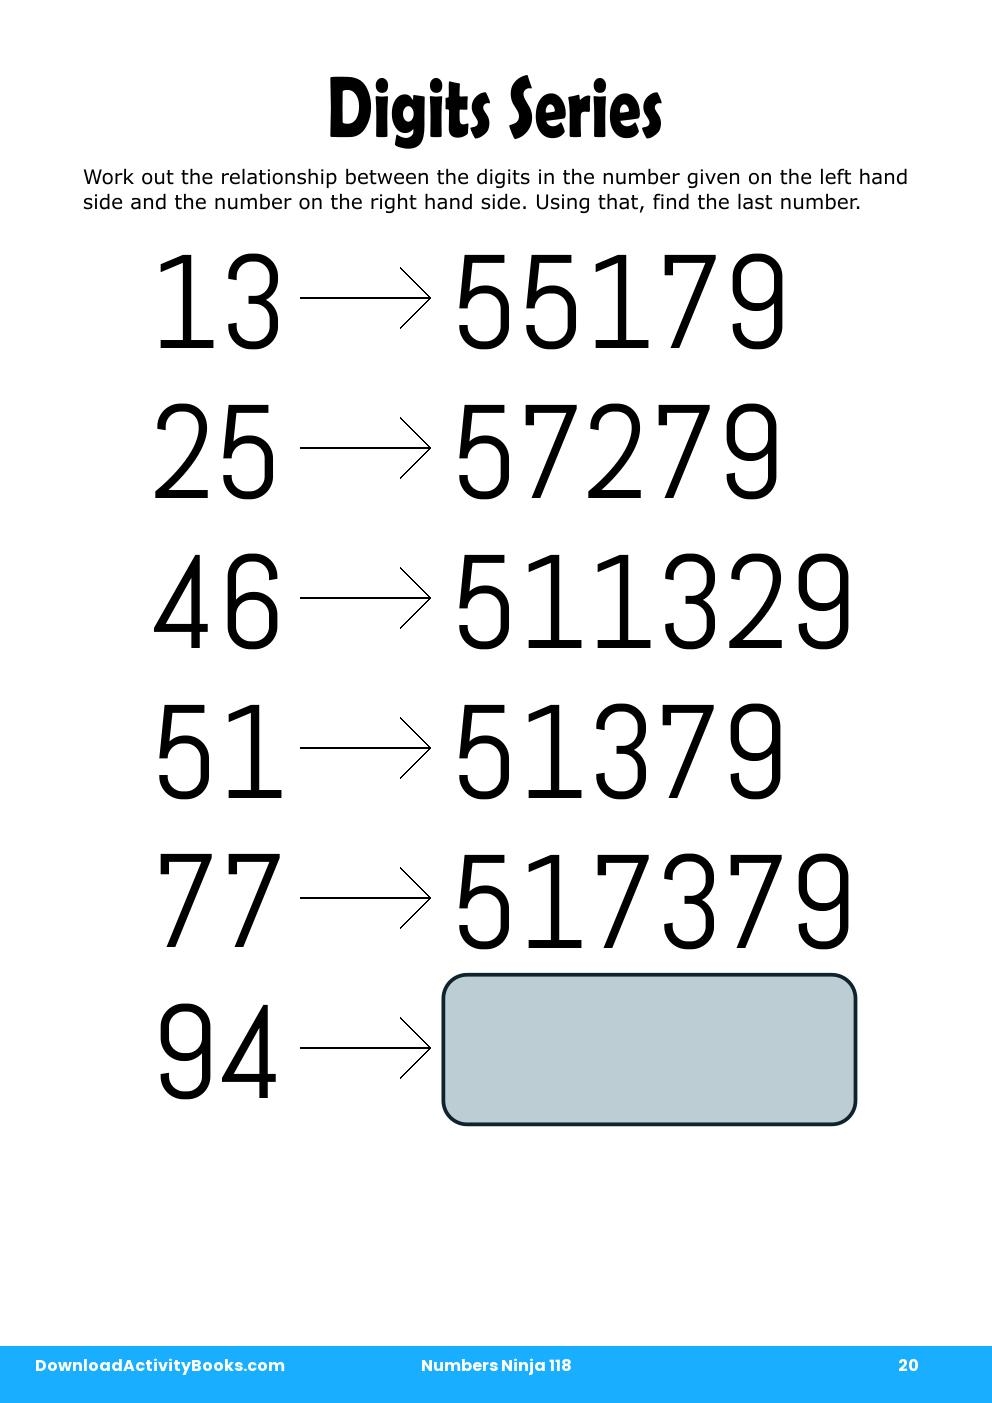 Digits Series in Numbers Ninja 118